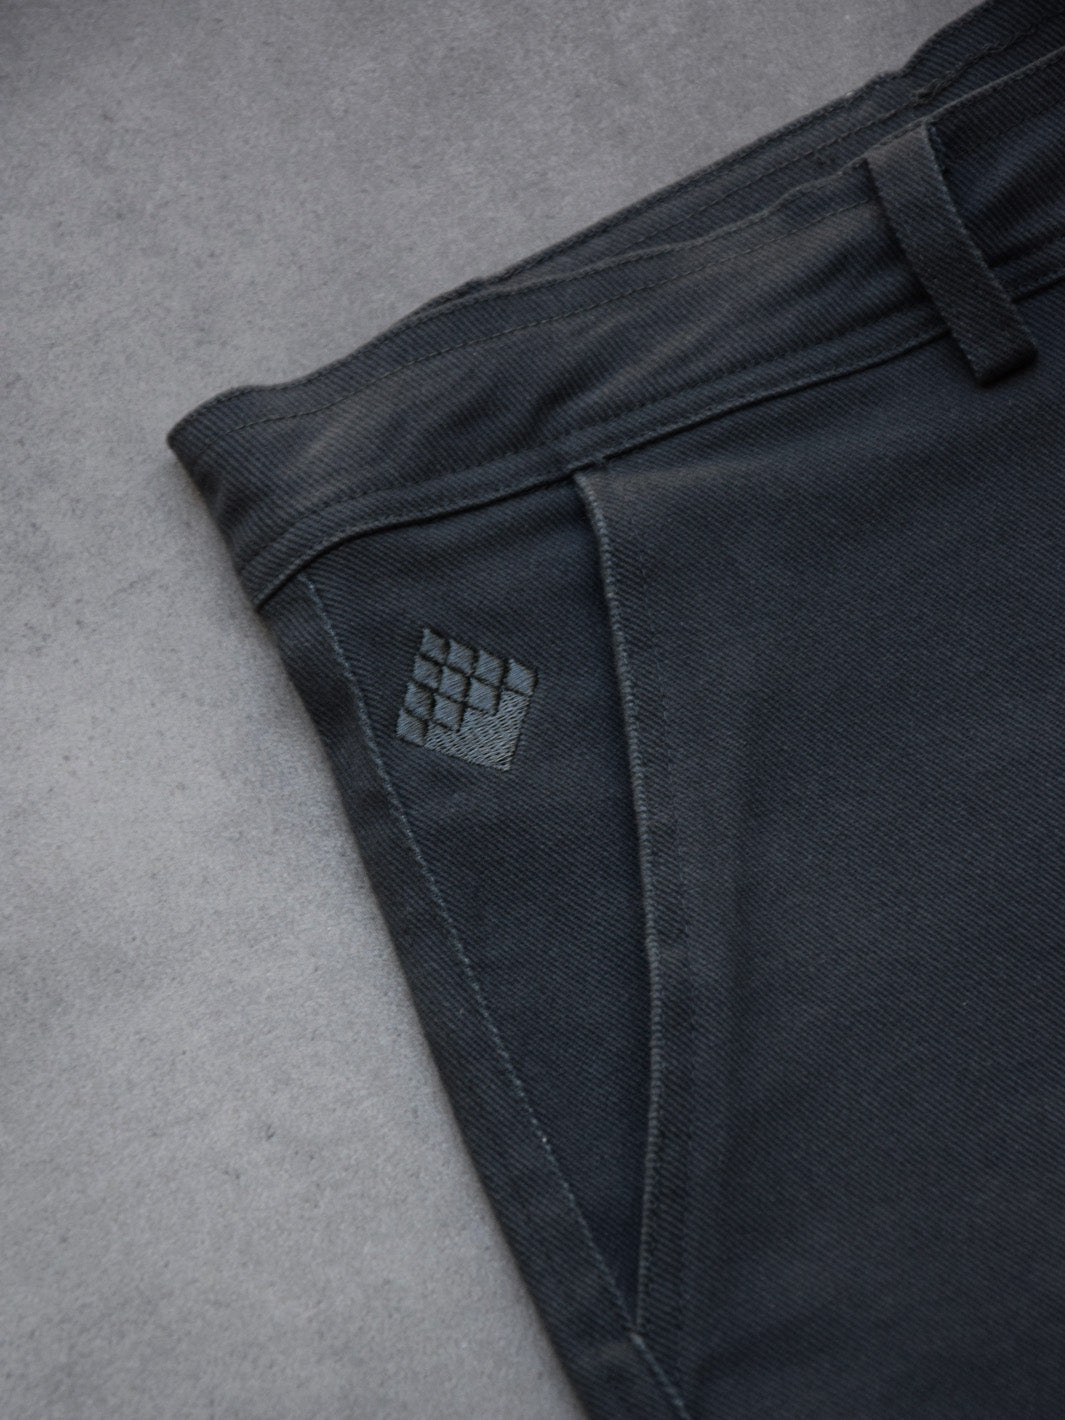 Pantalón Cargo Pant Grey